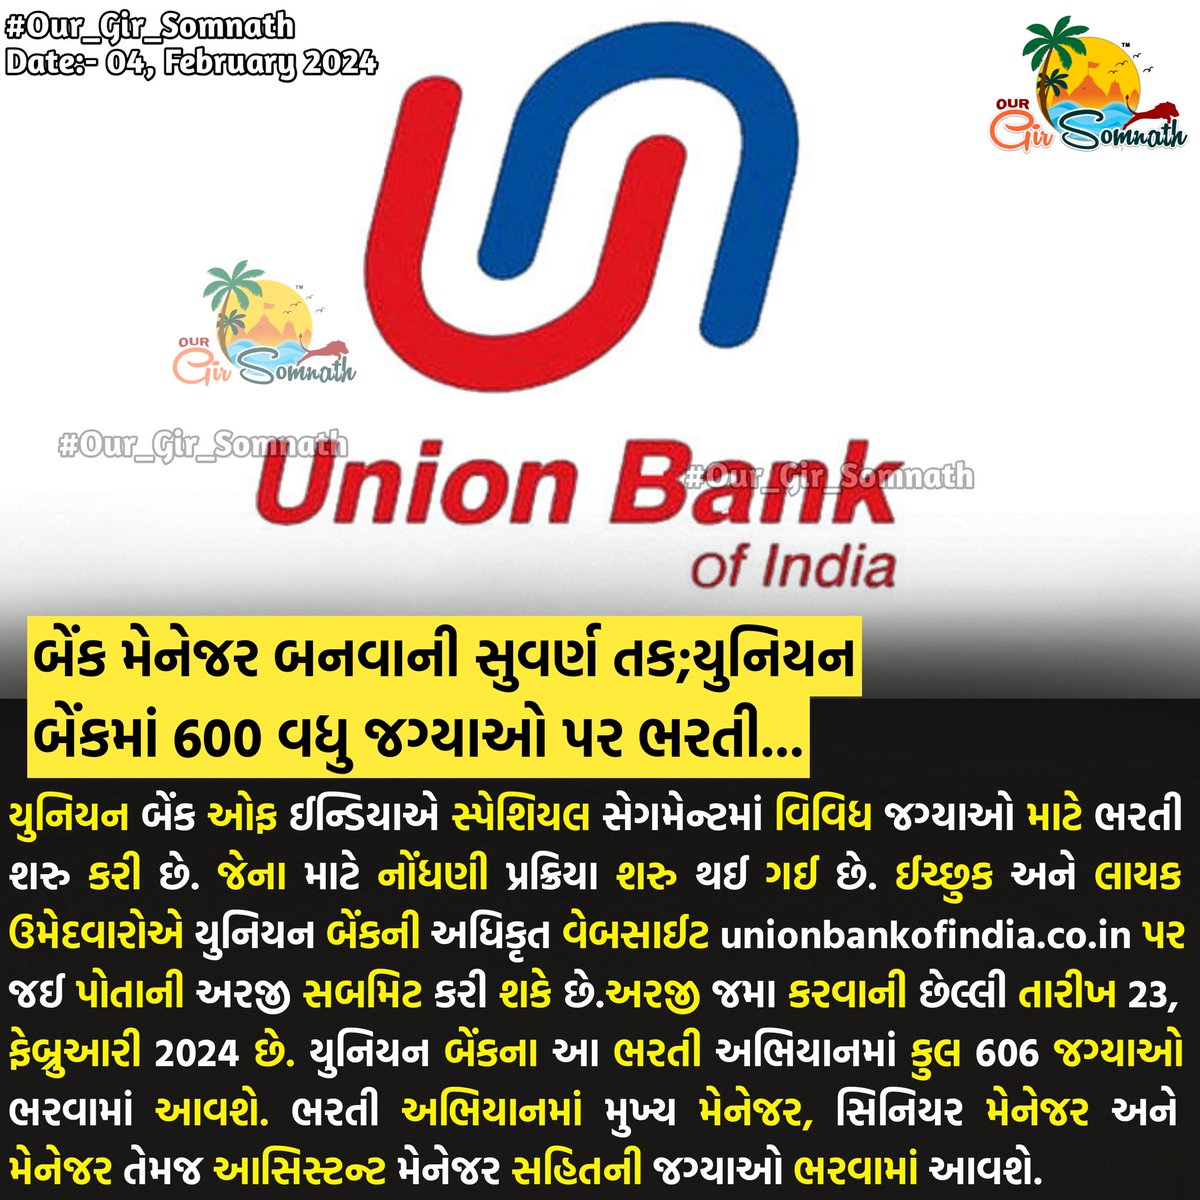 બેંક મેનેજર બનવાની સુવર્ણ તક;યુનિયન બેંકમાં 600 વધુ જગ્યાઓ પર ભરતી...

 #our_gir_somnath #our_amdavadcity #our_junaagadh #bank #bharti #unionbankofindia #manager